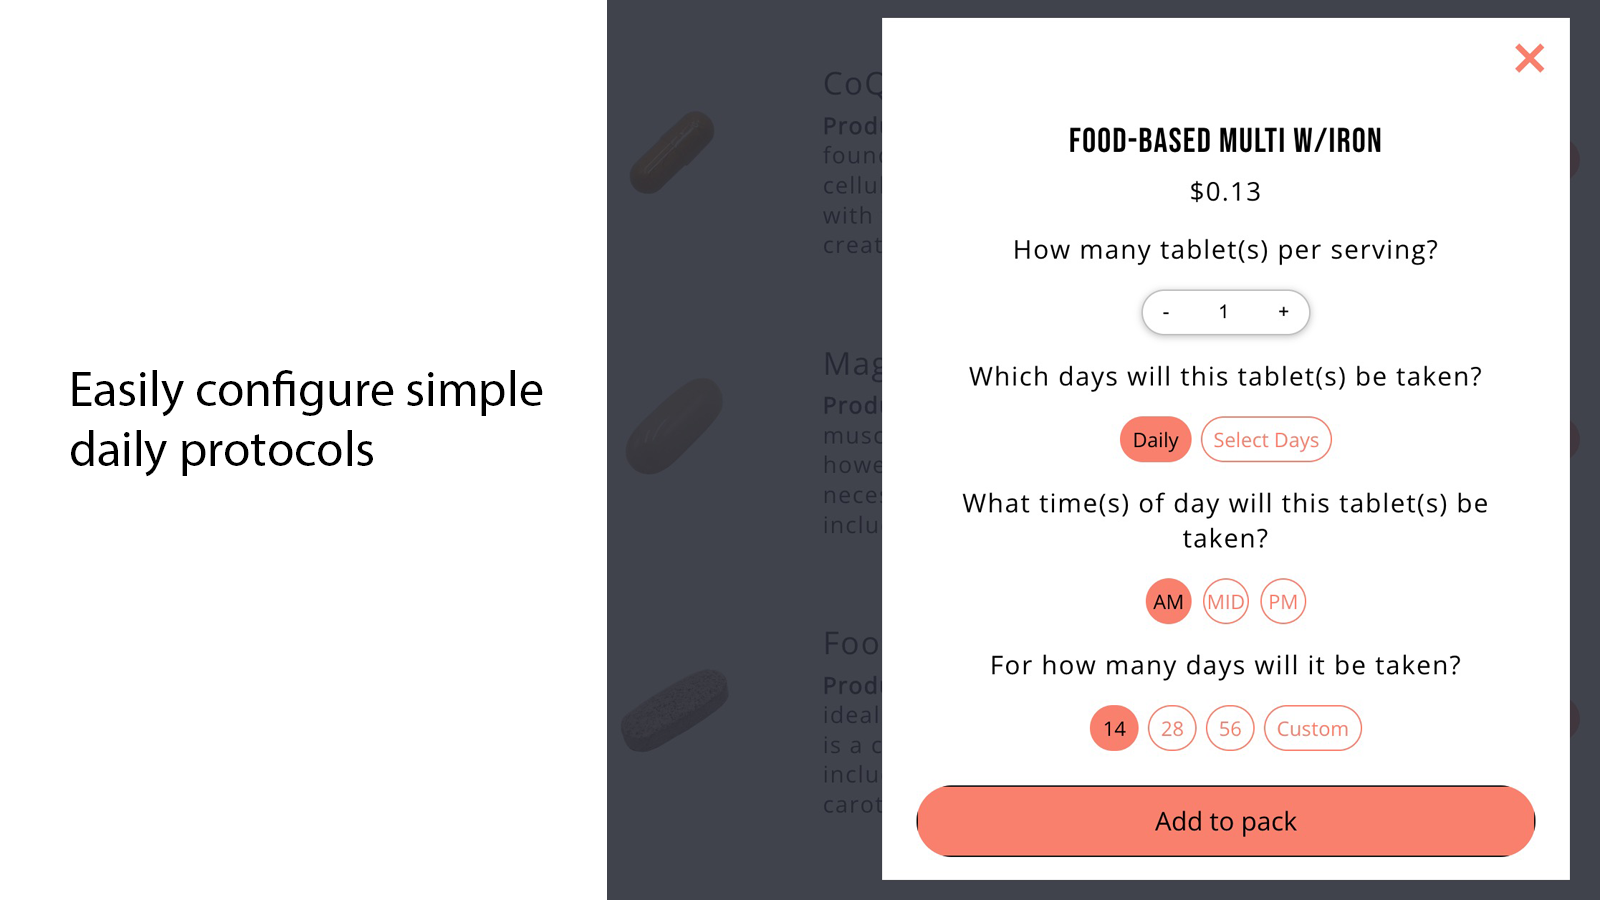 Basique : Vos consommateurs peuvent créer des protocoles quotidiens simples